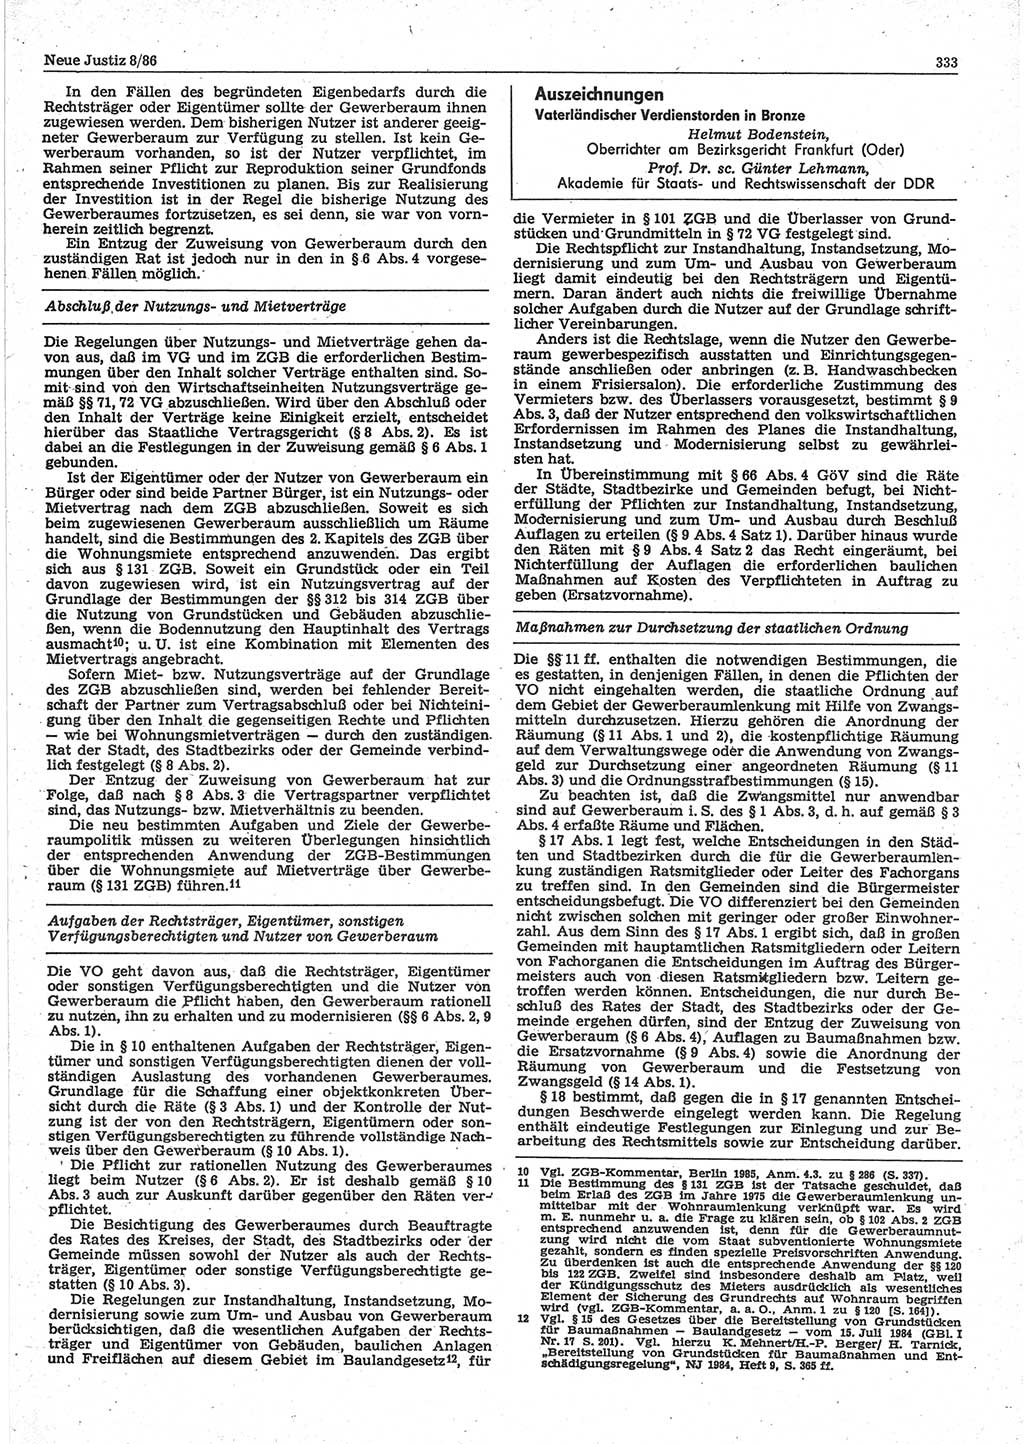 Neue Justiz (NJ), Zeitschrift für sozialistisches Recht und Gesetzlichkeit [Deutsche Demokratische Republik (DDR)], 40. Jahrgang 1986, Seite 333 (NJ DDR 1986, S. 333)